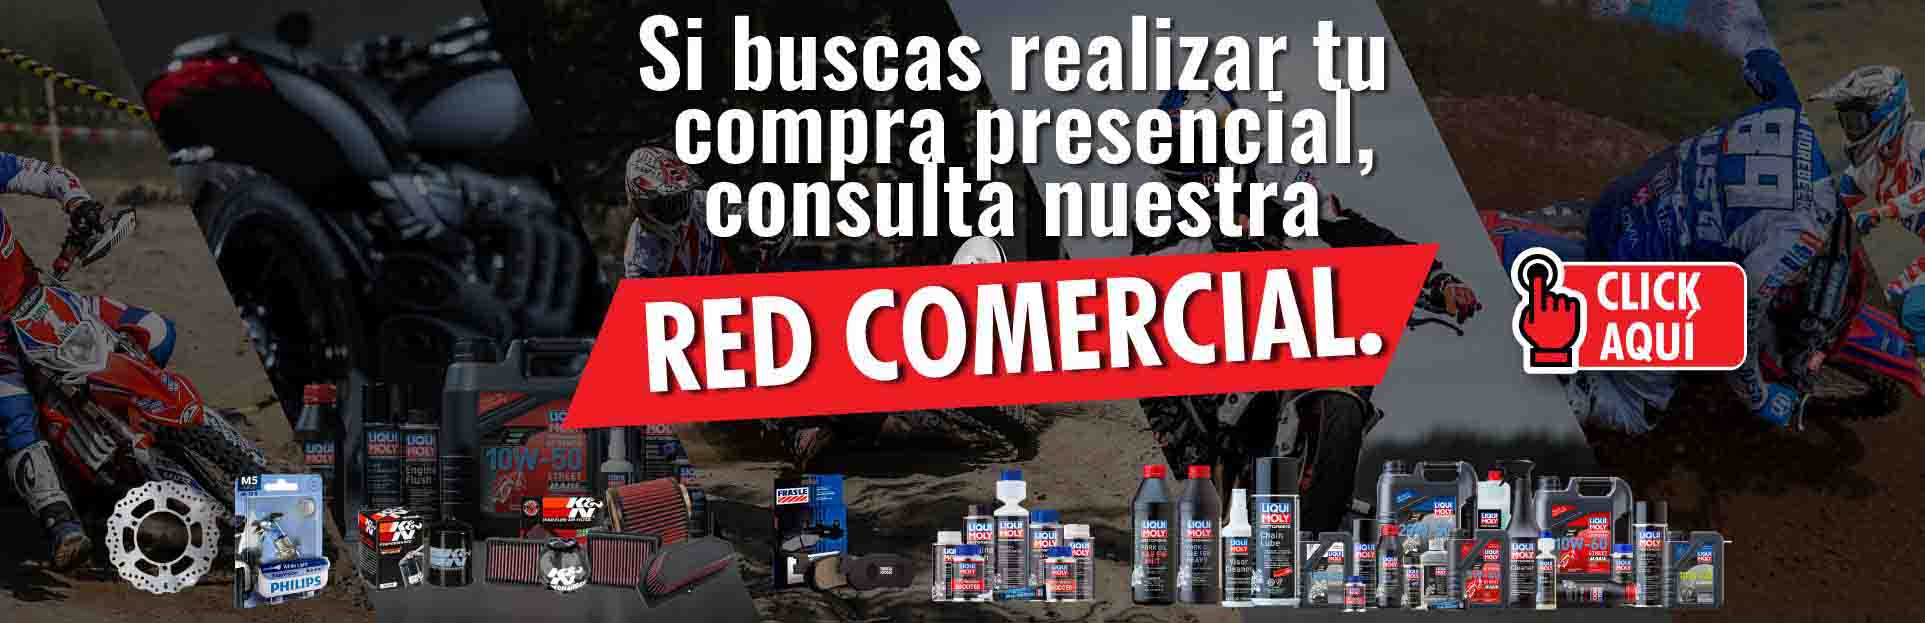 Red Comercial Filtros, Aceites, Pastillas, Bombillos, Discos, Aditivos, Frenos, Lubricantes.